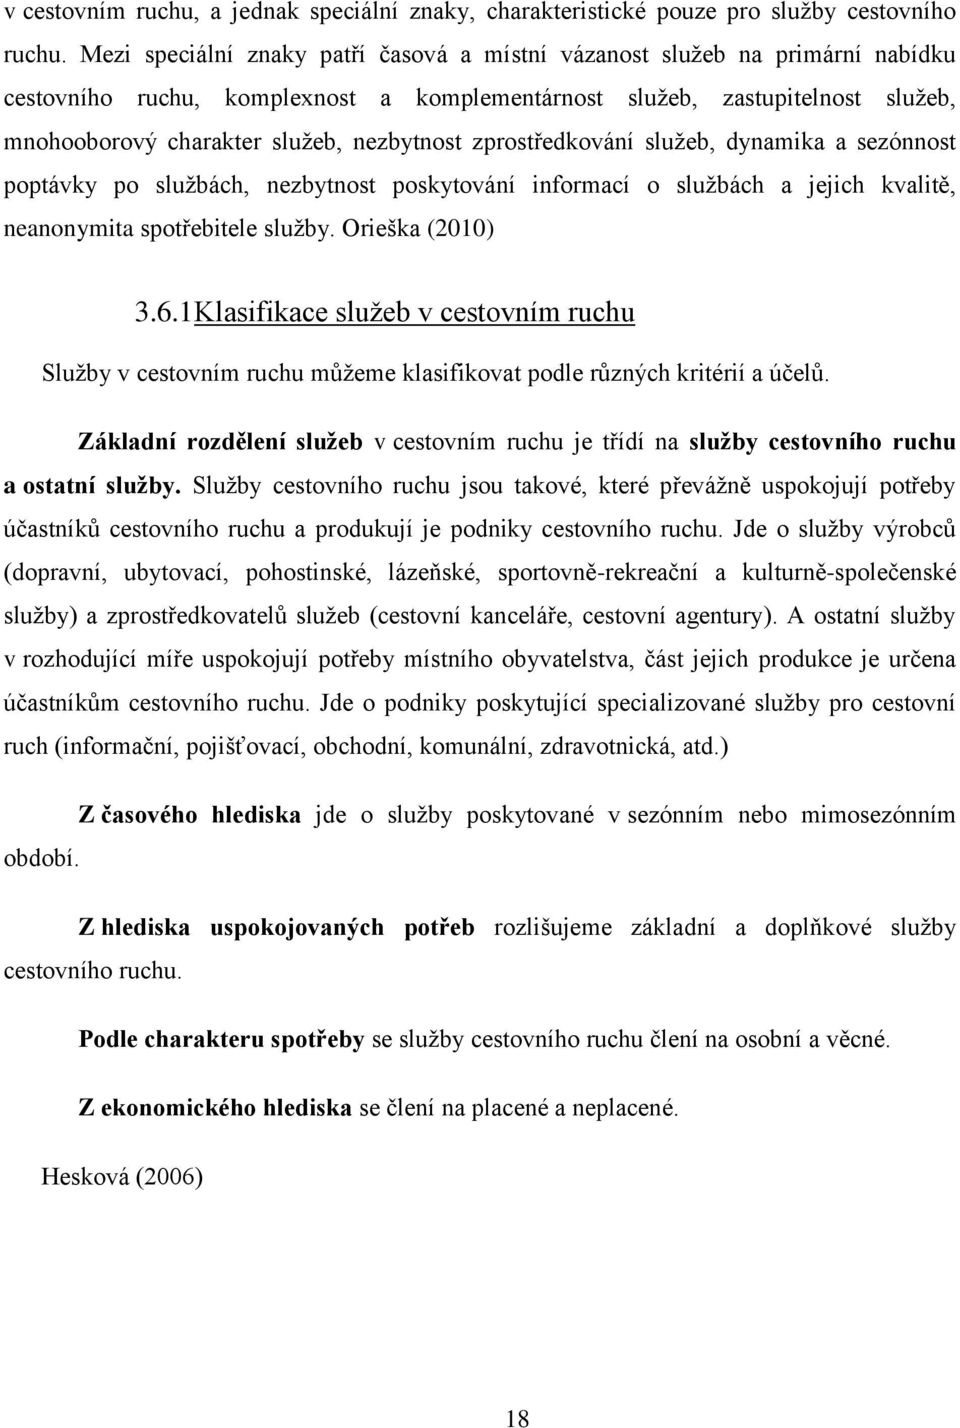 nezbytnost zprostředkování sluţeb, dynamika a sezónnost poptávky po sluţbách, nezbytnost poskytování informací o sluţbách a jejich kvalitě, neanonymita spotřebitele sluţby. Orieška (2010) 3.6.